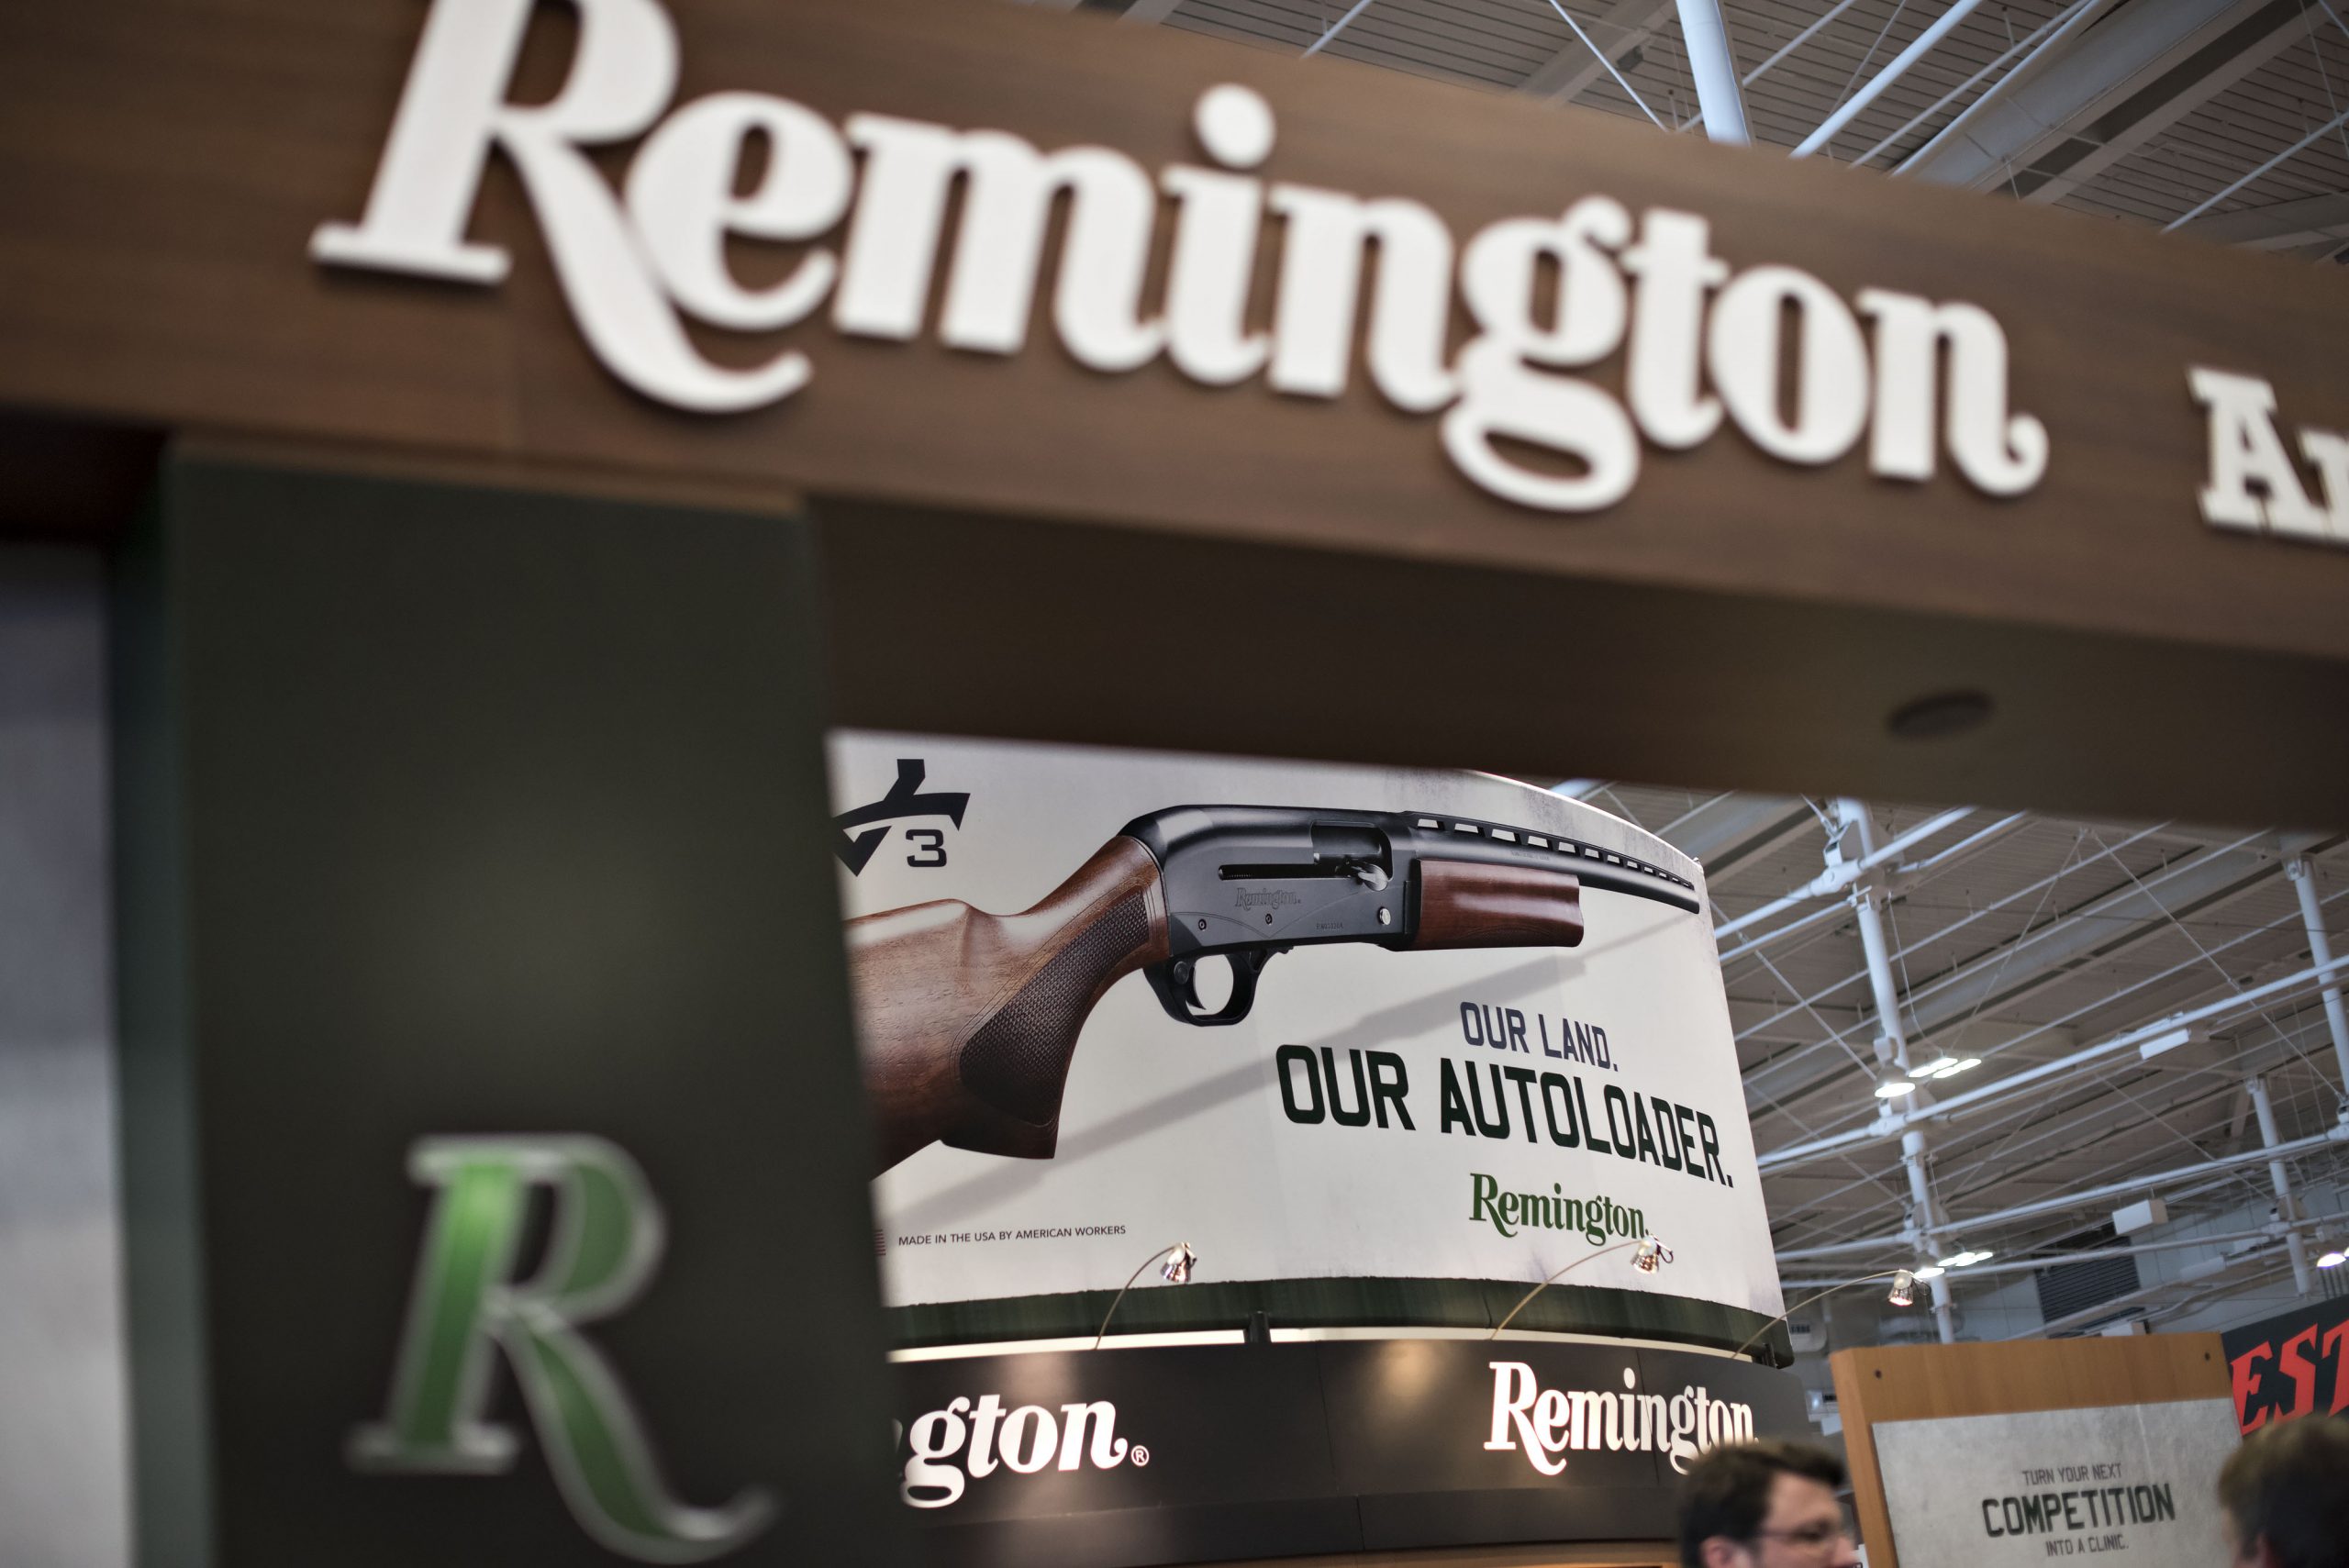 remington gun repair